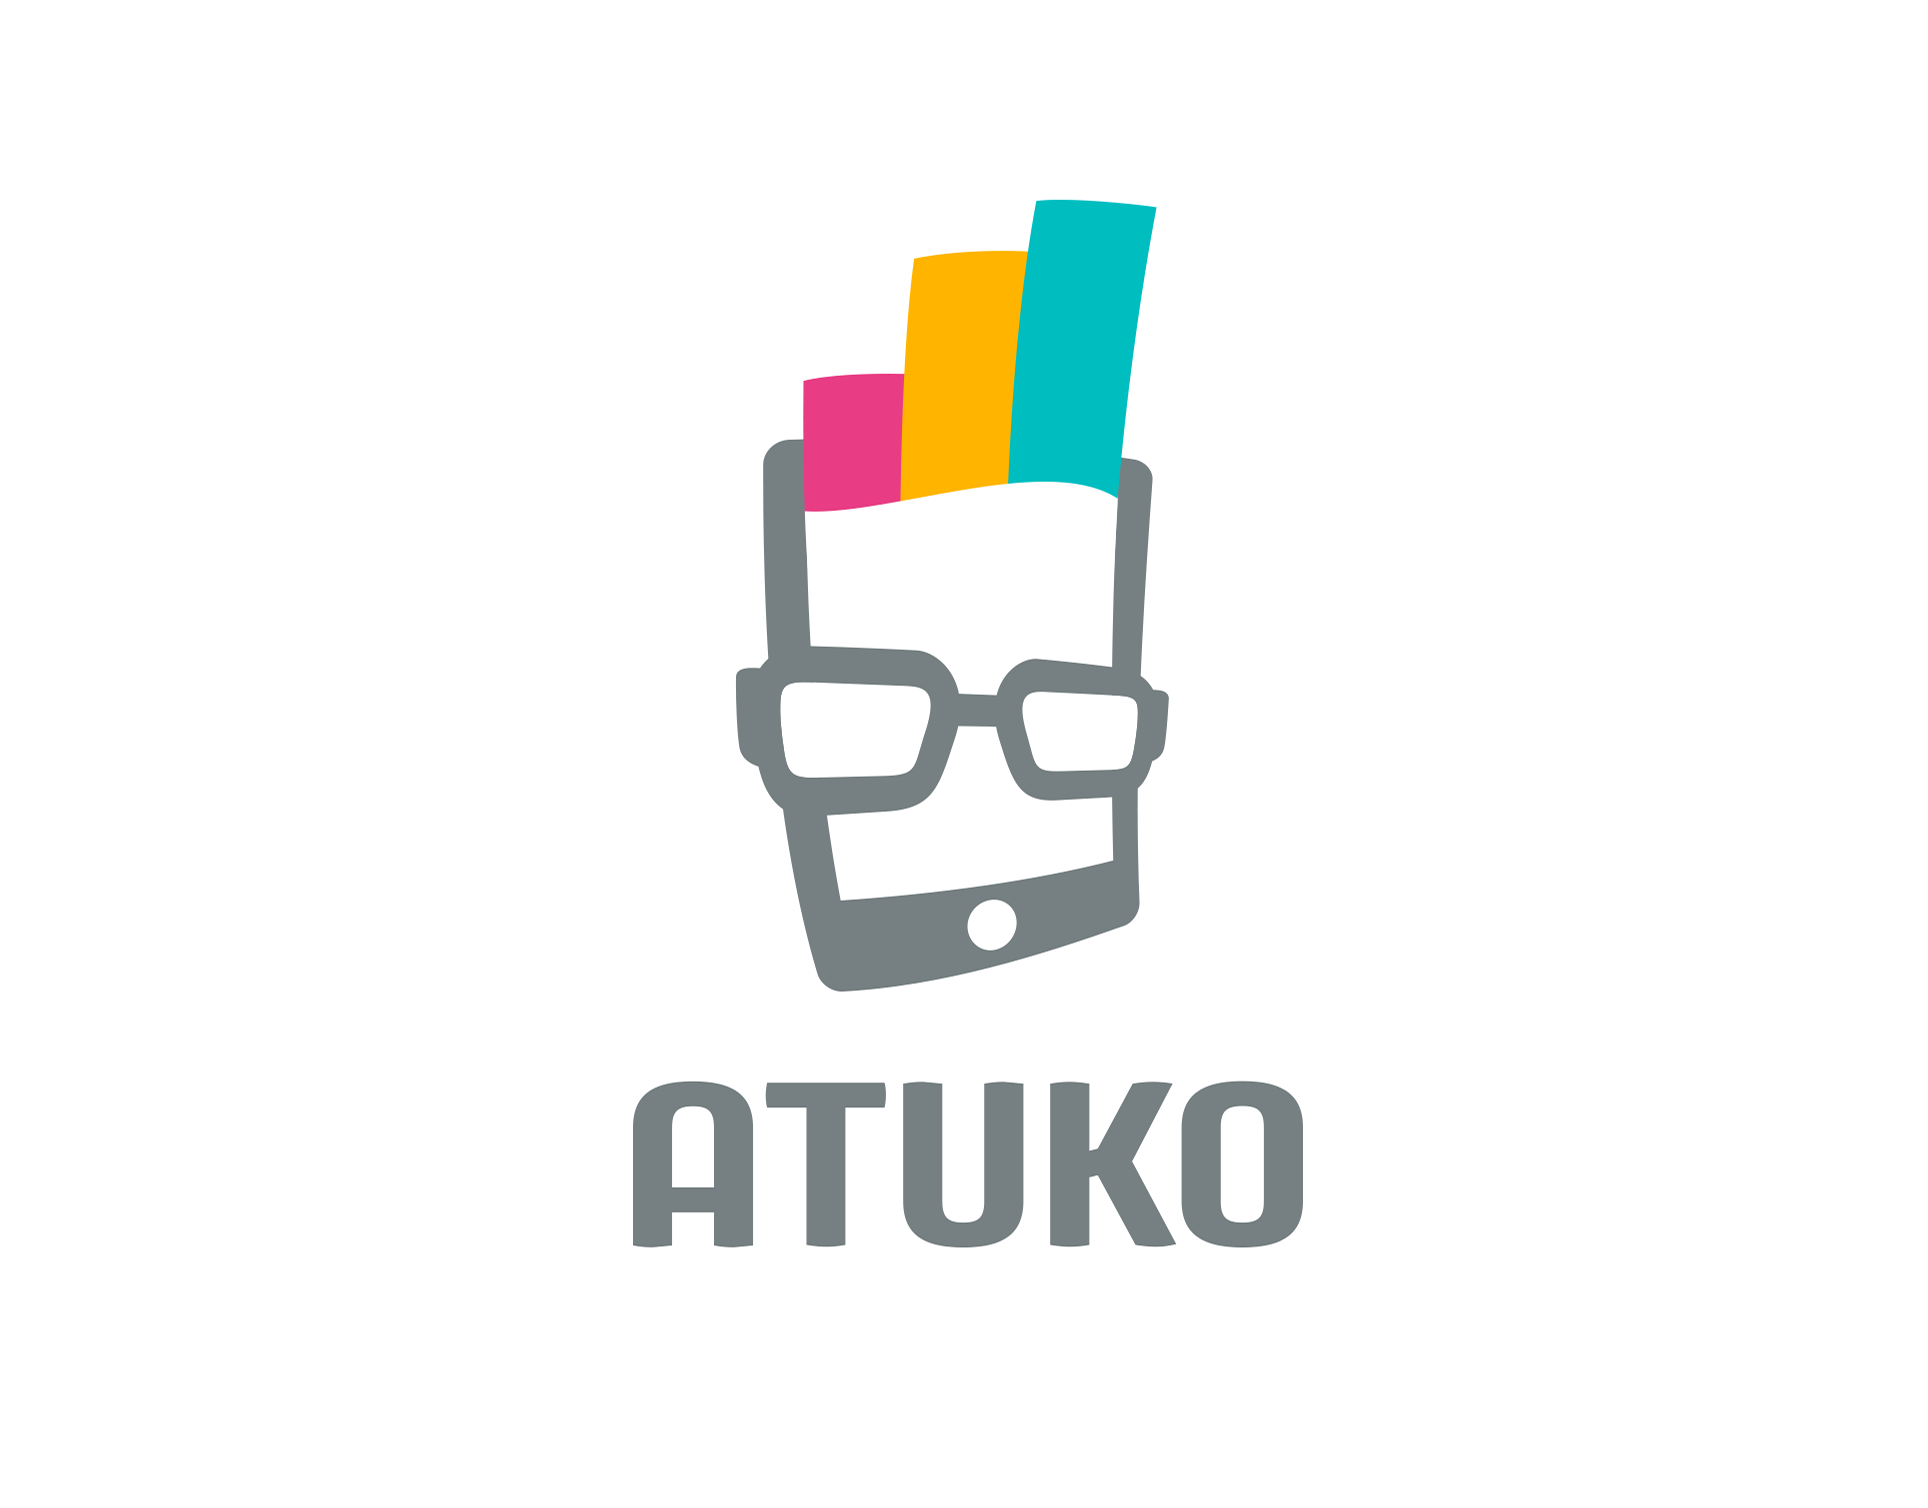 Atuko